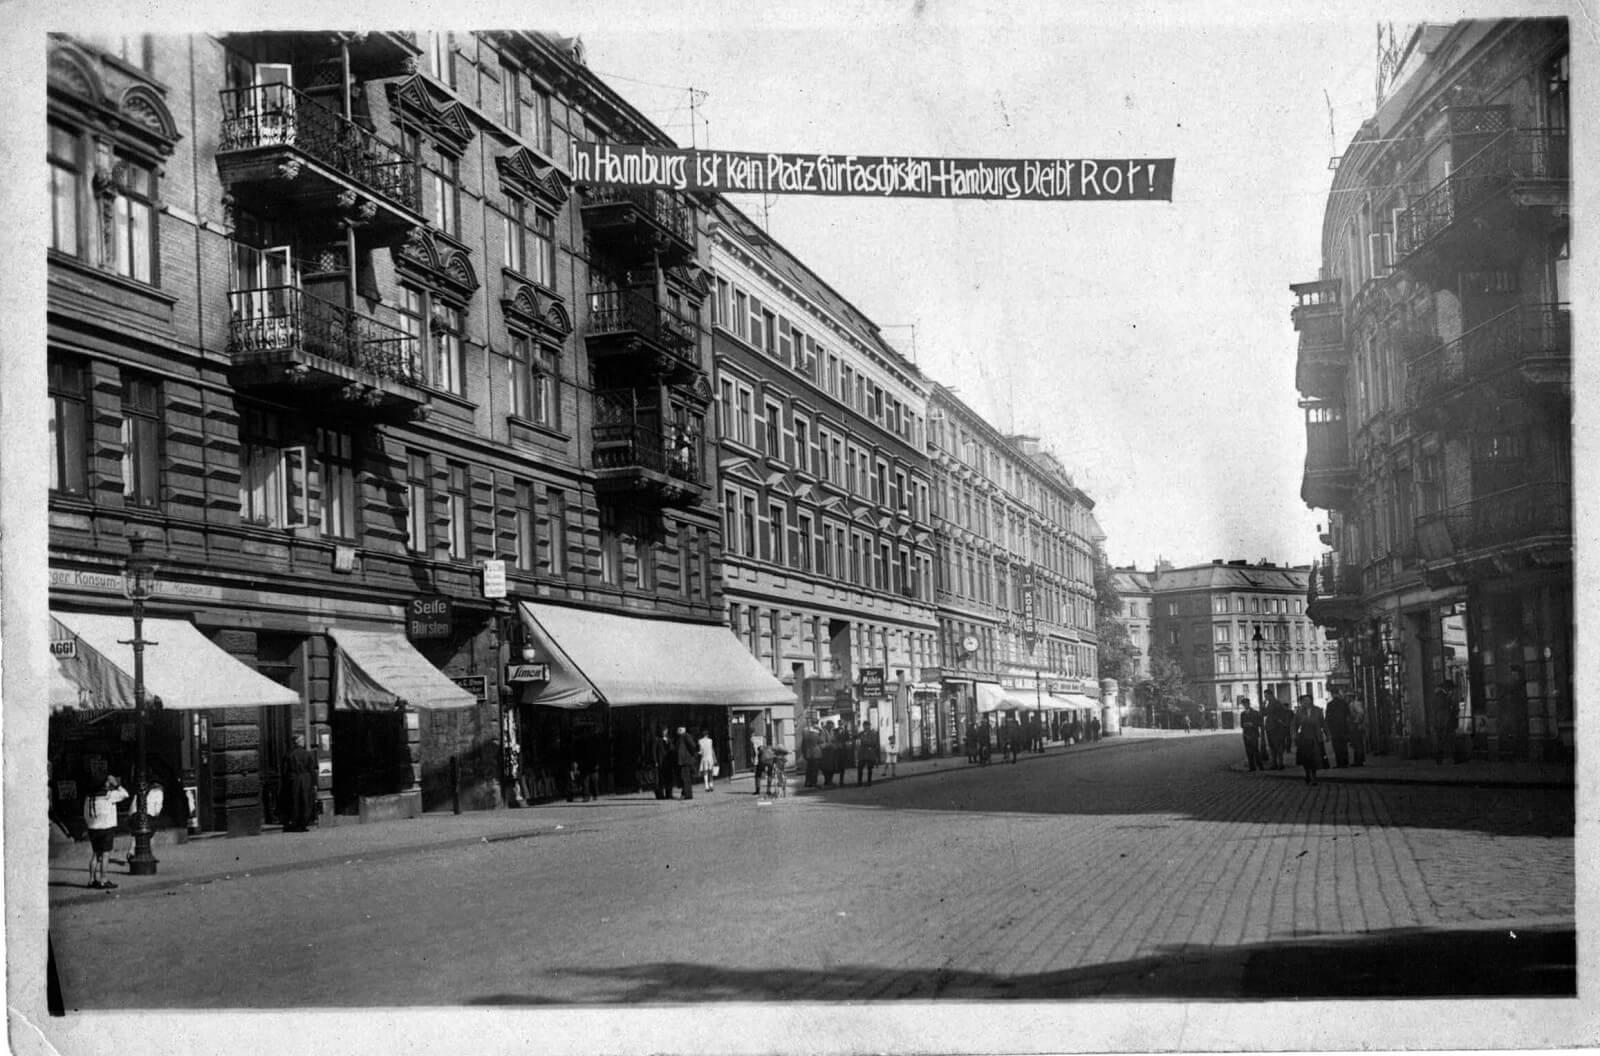 »In Hamburg ist kein Platz für Faschisten – Hamburg bleibt Rot« Transparent über die Herderstrasse in Hamburg Uhlenhorst.